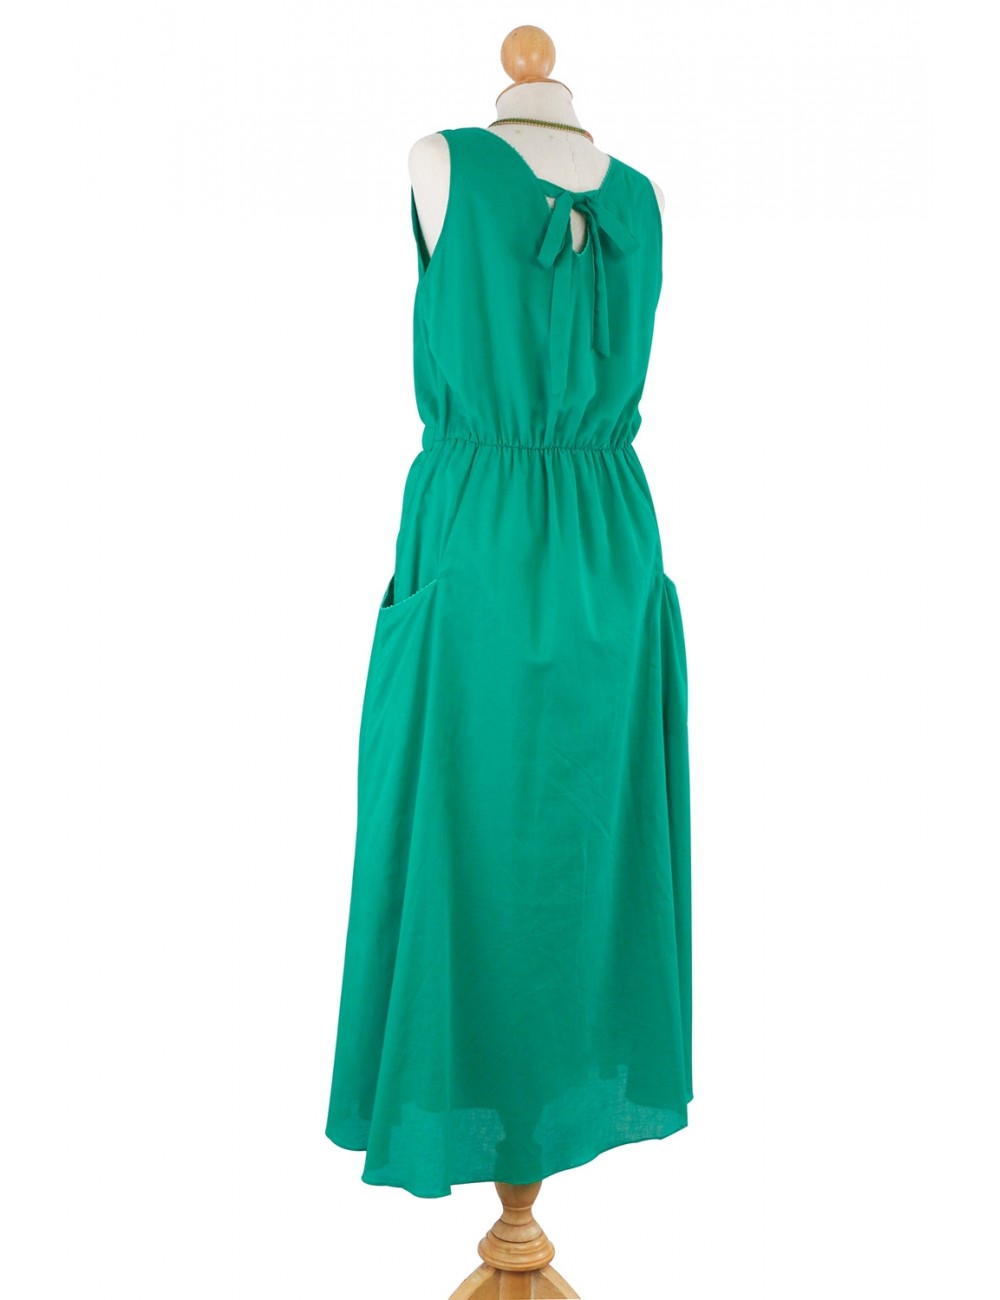 Cotton Dress, Cotton Maxi Dress, Holly Dress, Green